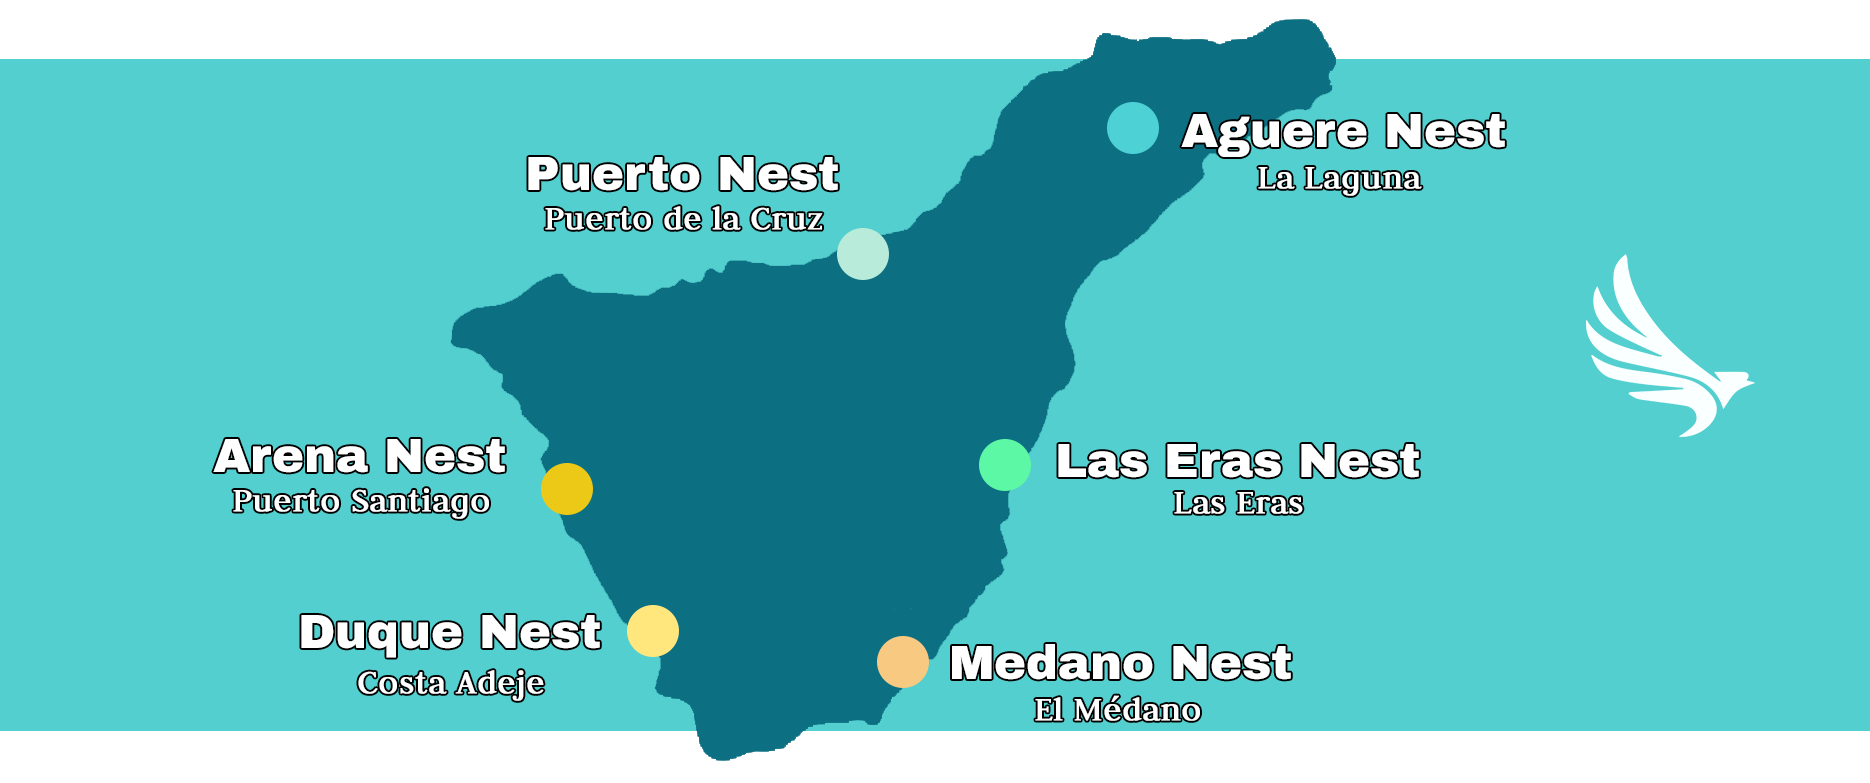 Nuestros seis hostales están distribuidos por toda la isla en los lugares más representativos